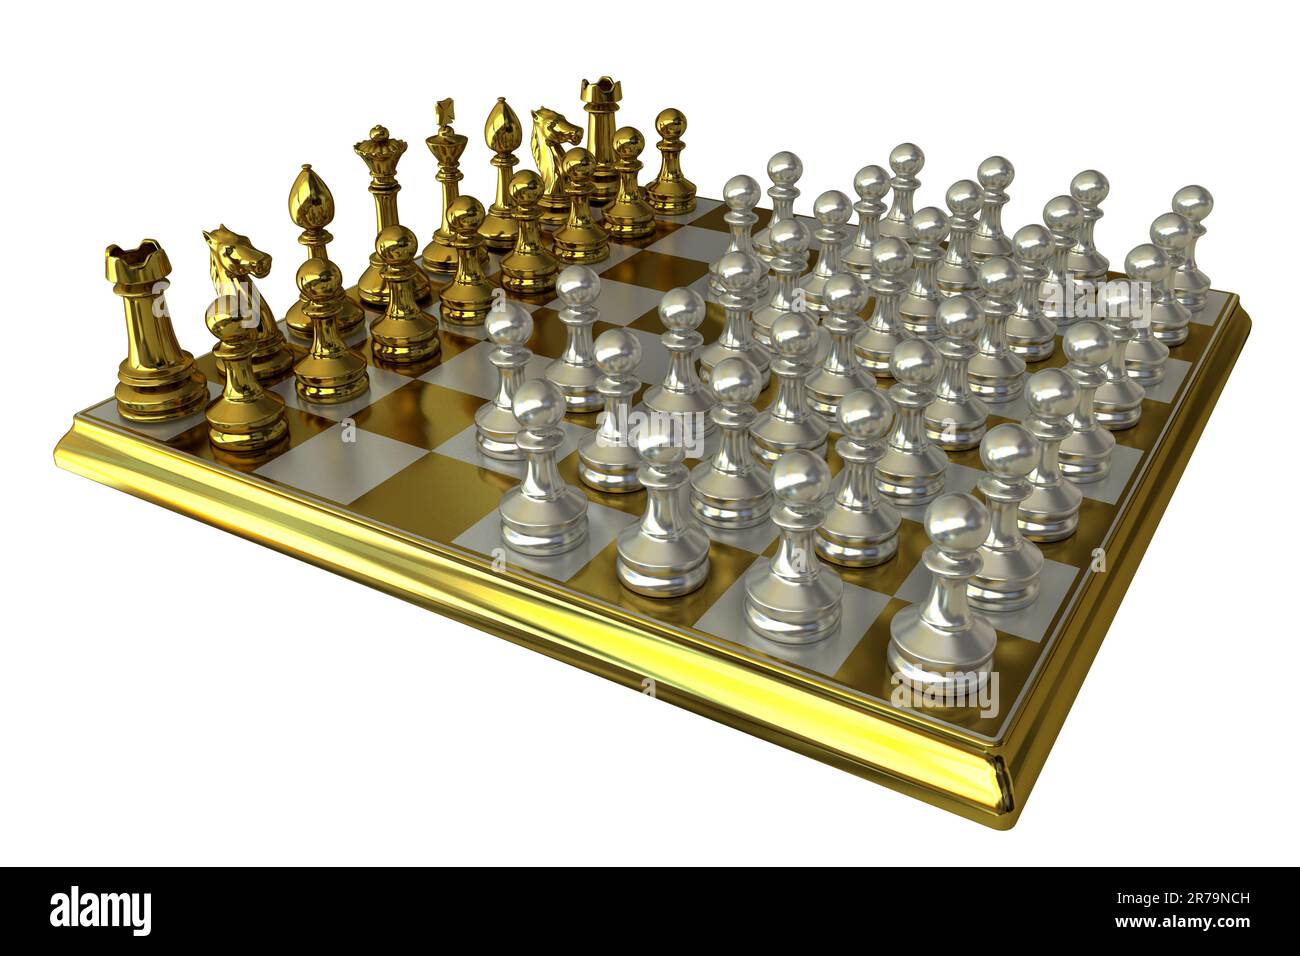 Variante dell'orda di scacchi, 3D illustrazione. Variante asimmetrica a scacchi con un lato con pezzi standard e l'altro lato con 36 pedine. Orde c Foto Stock